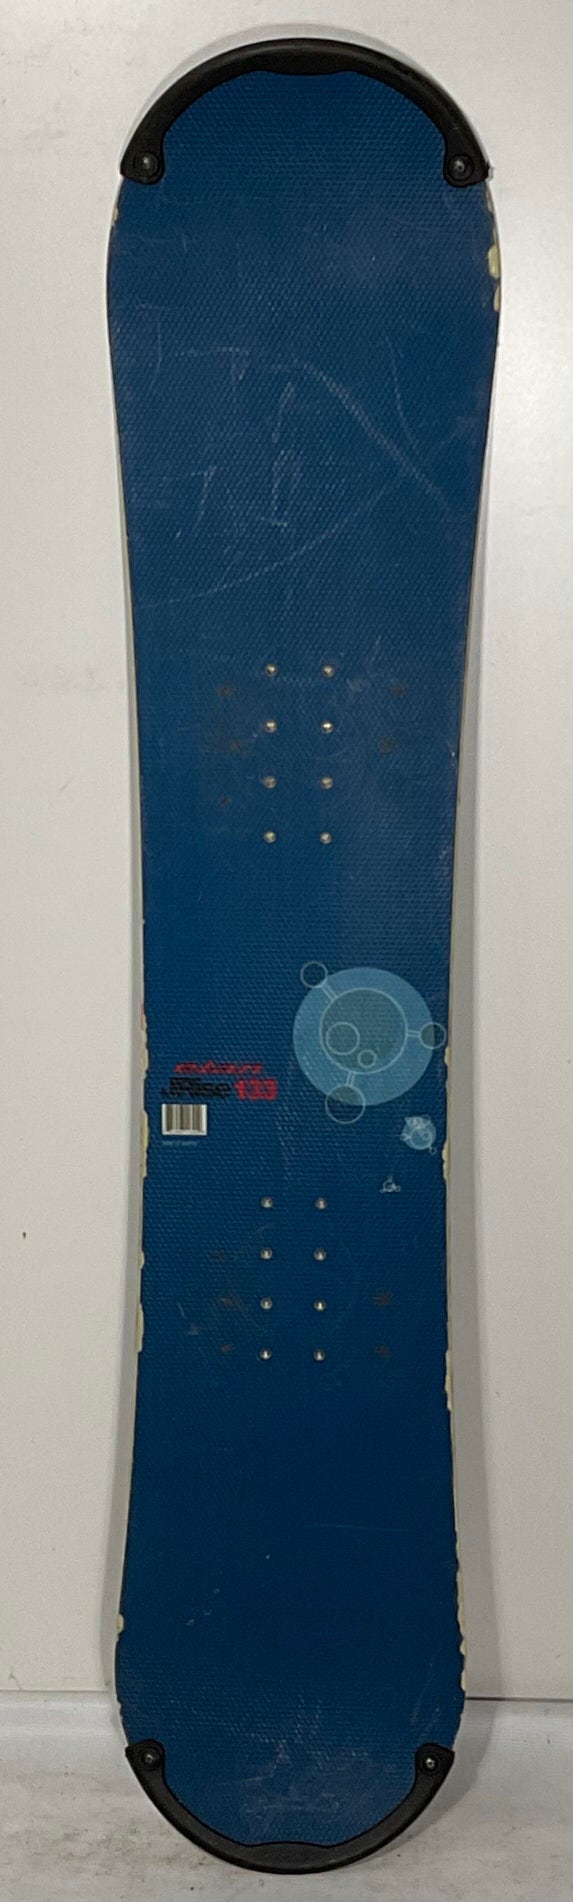 Used Elan JRise 133cm Snowboard Without Bindings (SNB101)